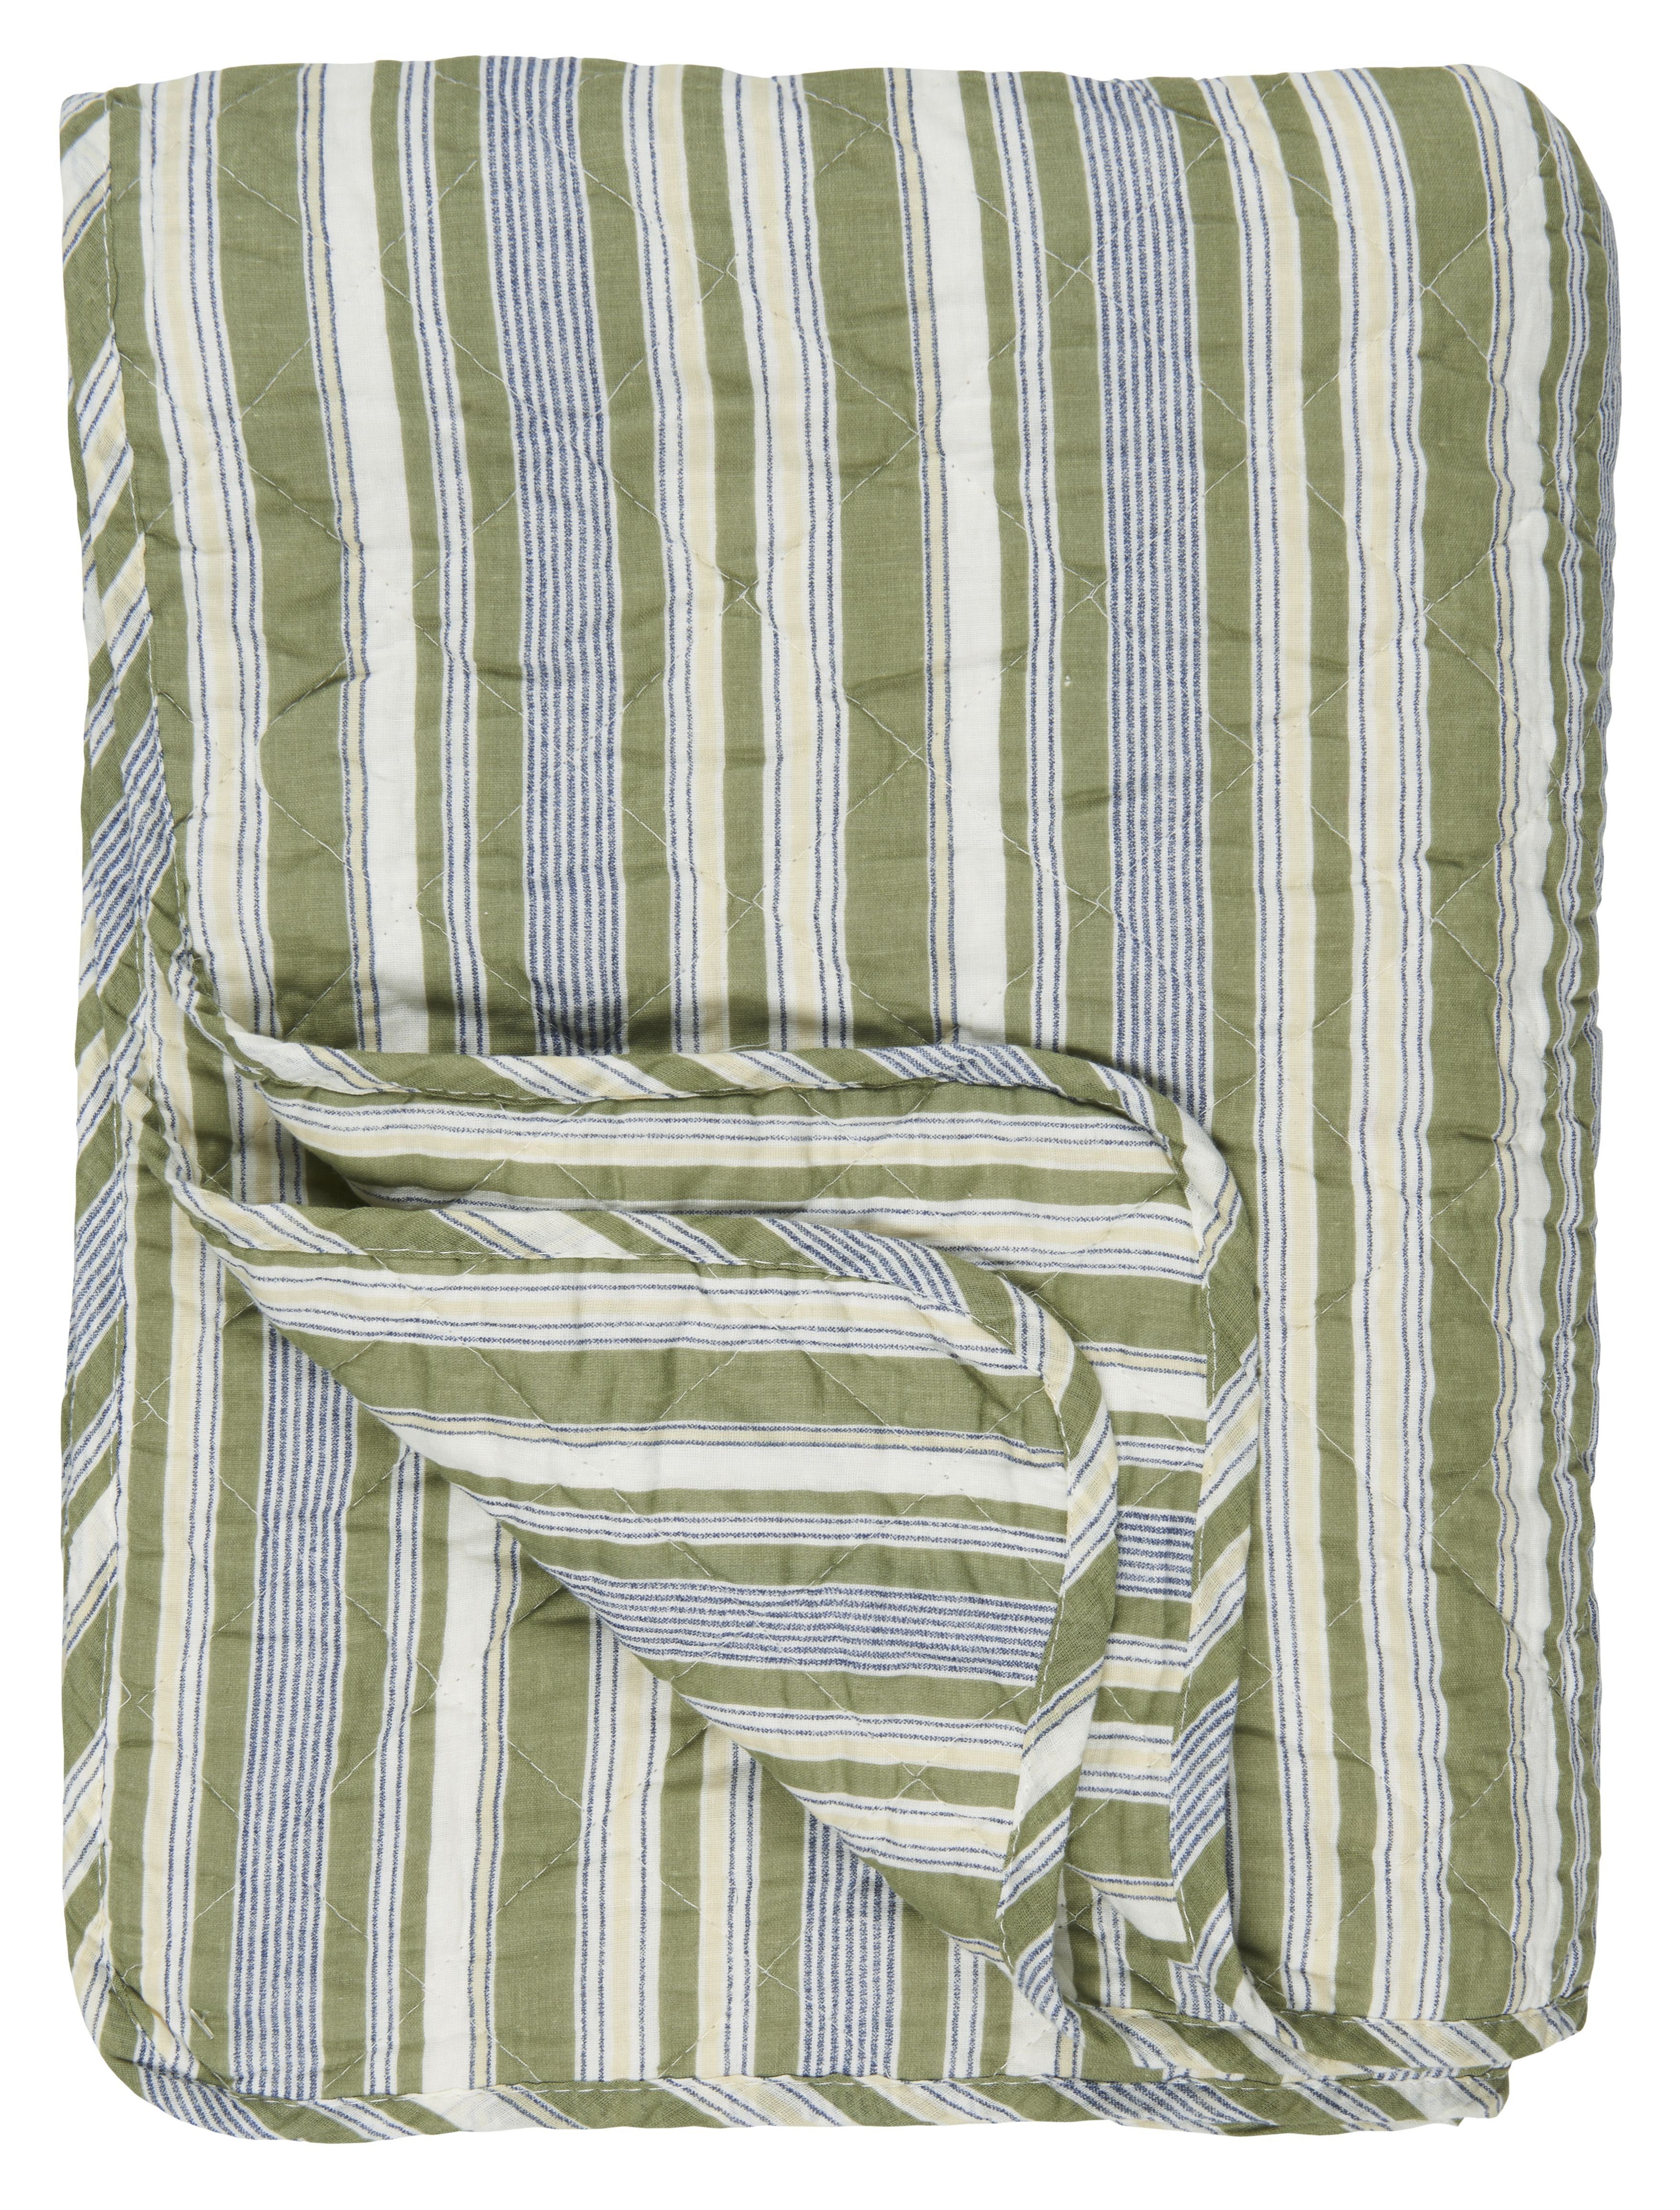 Farbe/Muster: gestreift Ib Quilt Laursen, .. Weiß, Tagesdecke - Beige, Überwurf Grau Grün, Grün Weiß Gestreift Tagesdecke Decke 180x130cm,